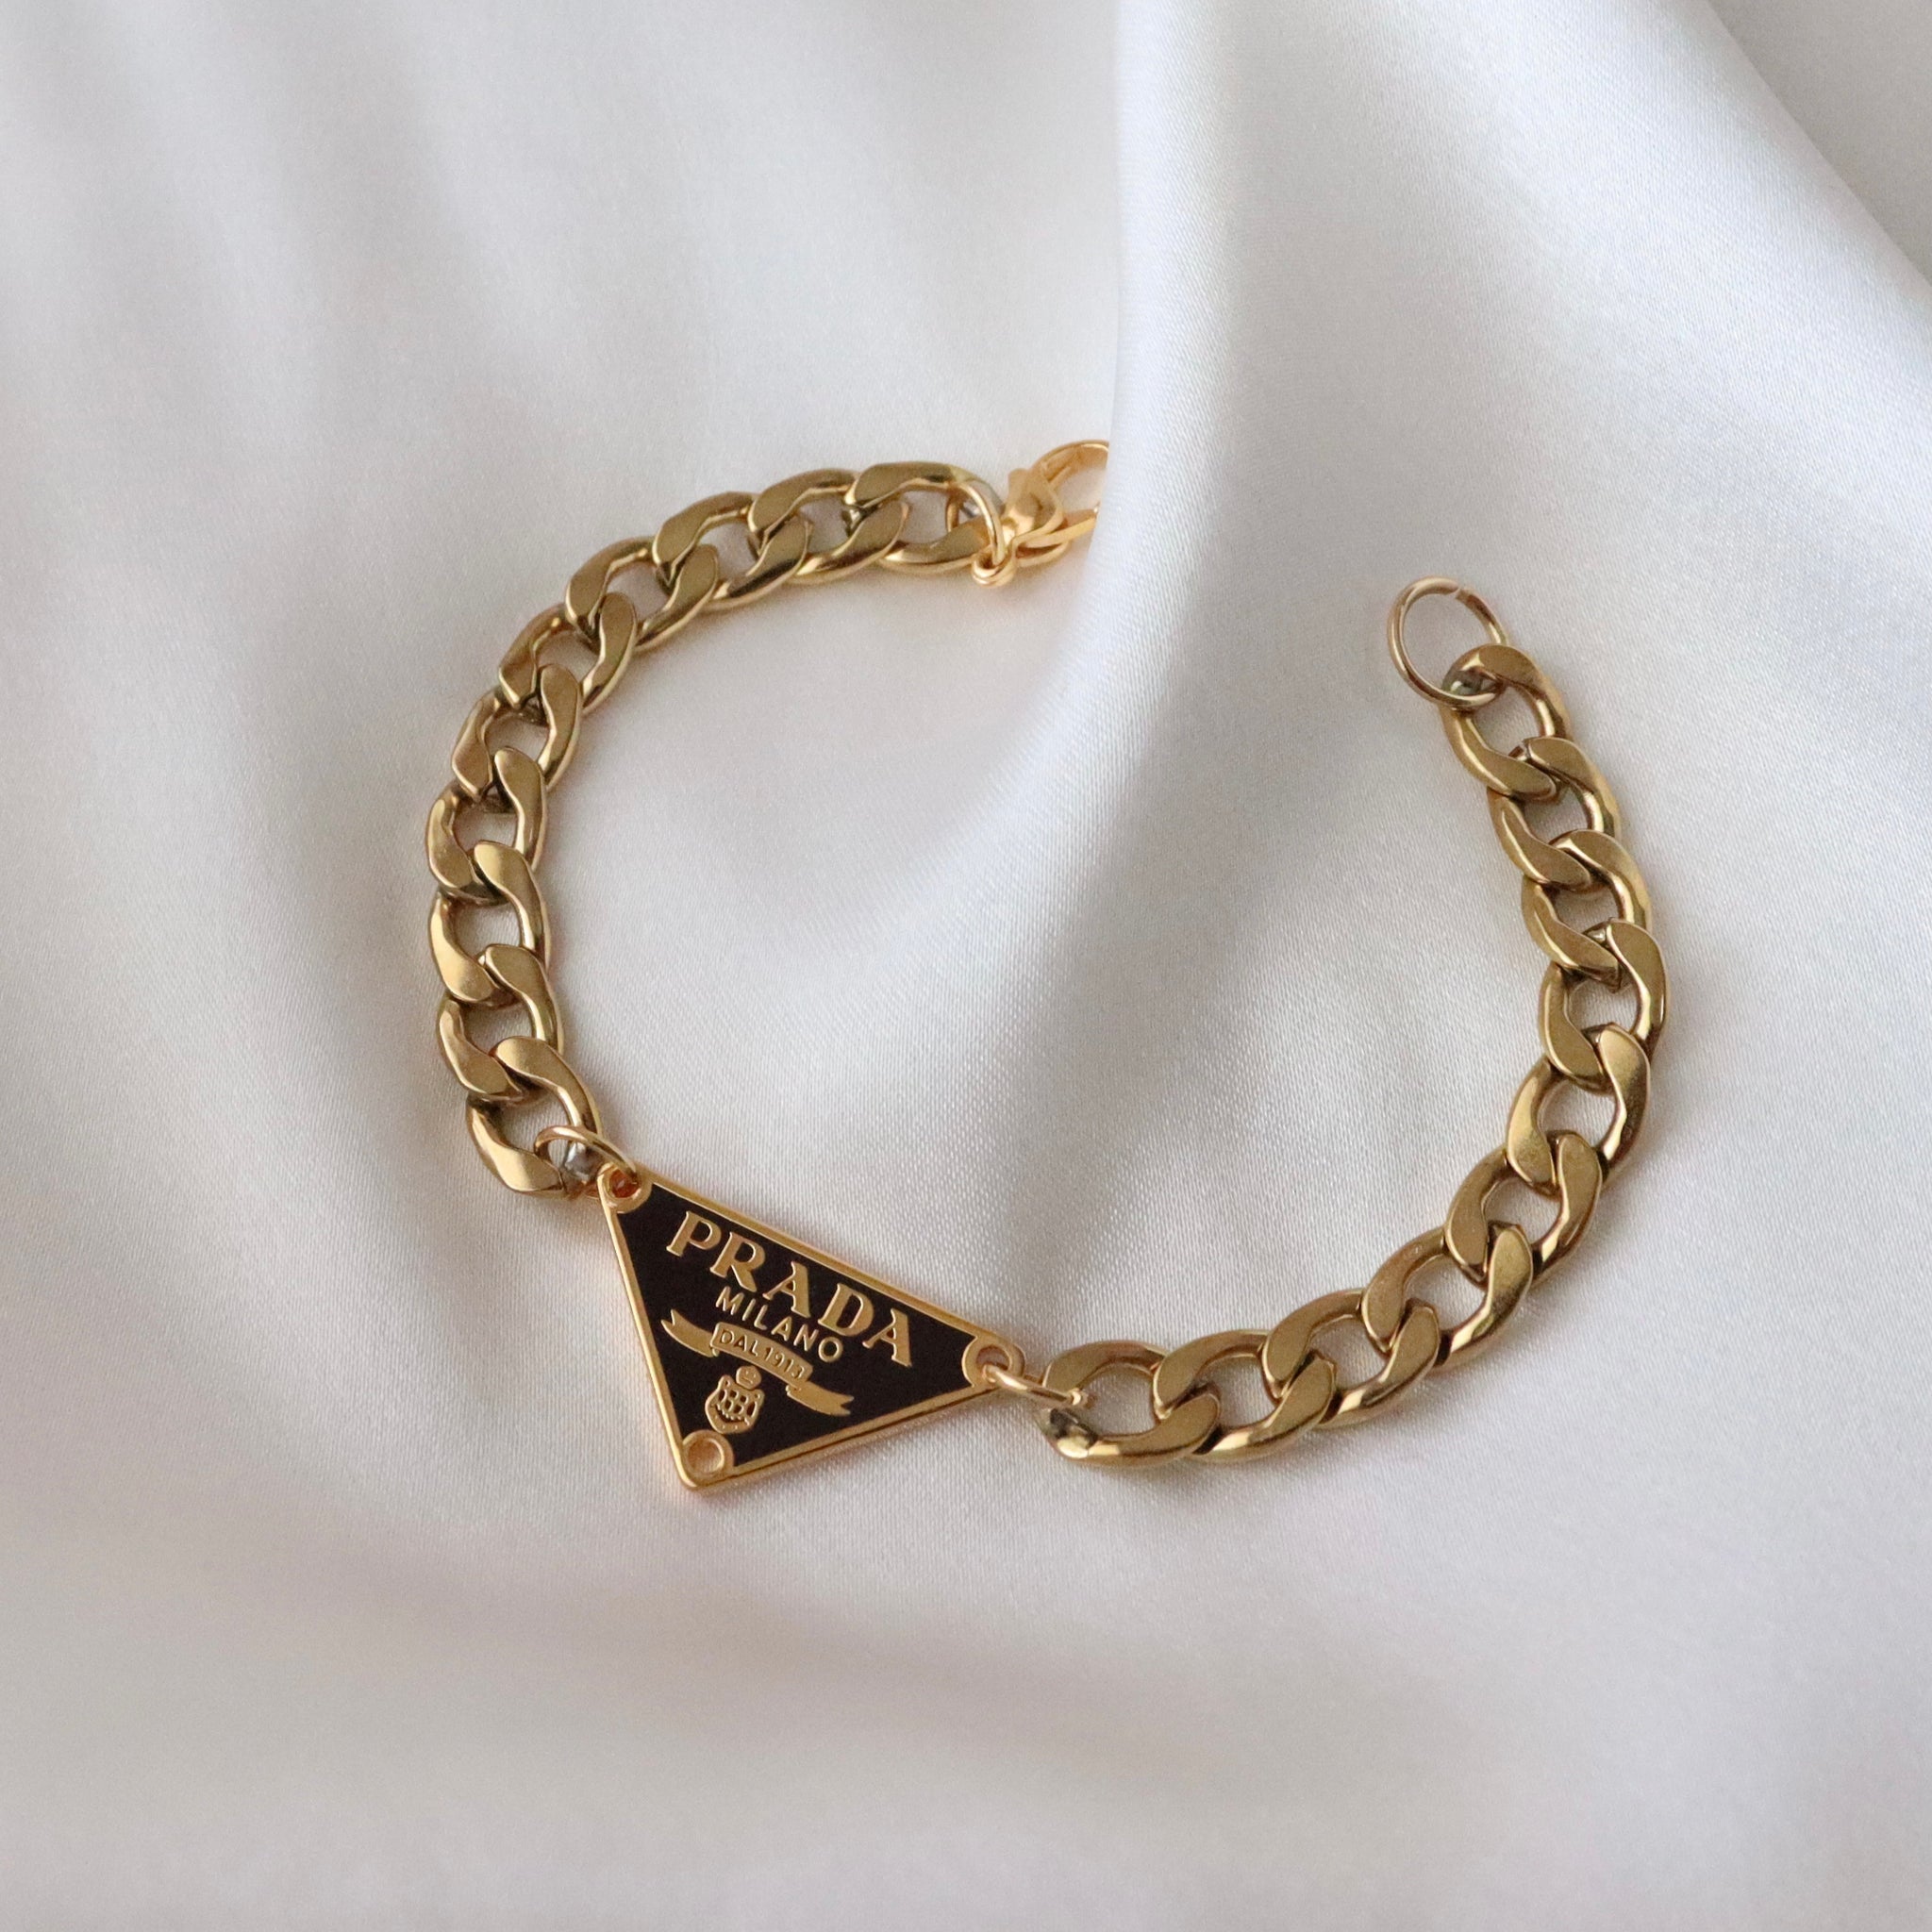 Rework Vintage Brown and Gold Prada Emblem on Necklace or Bracelet – Relic  the Label